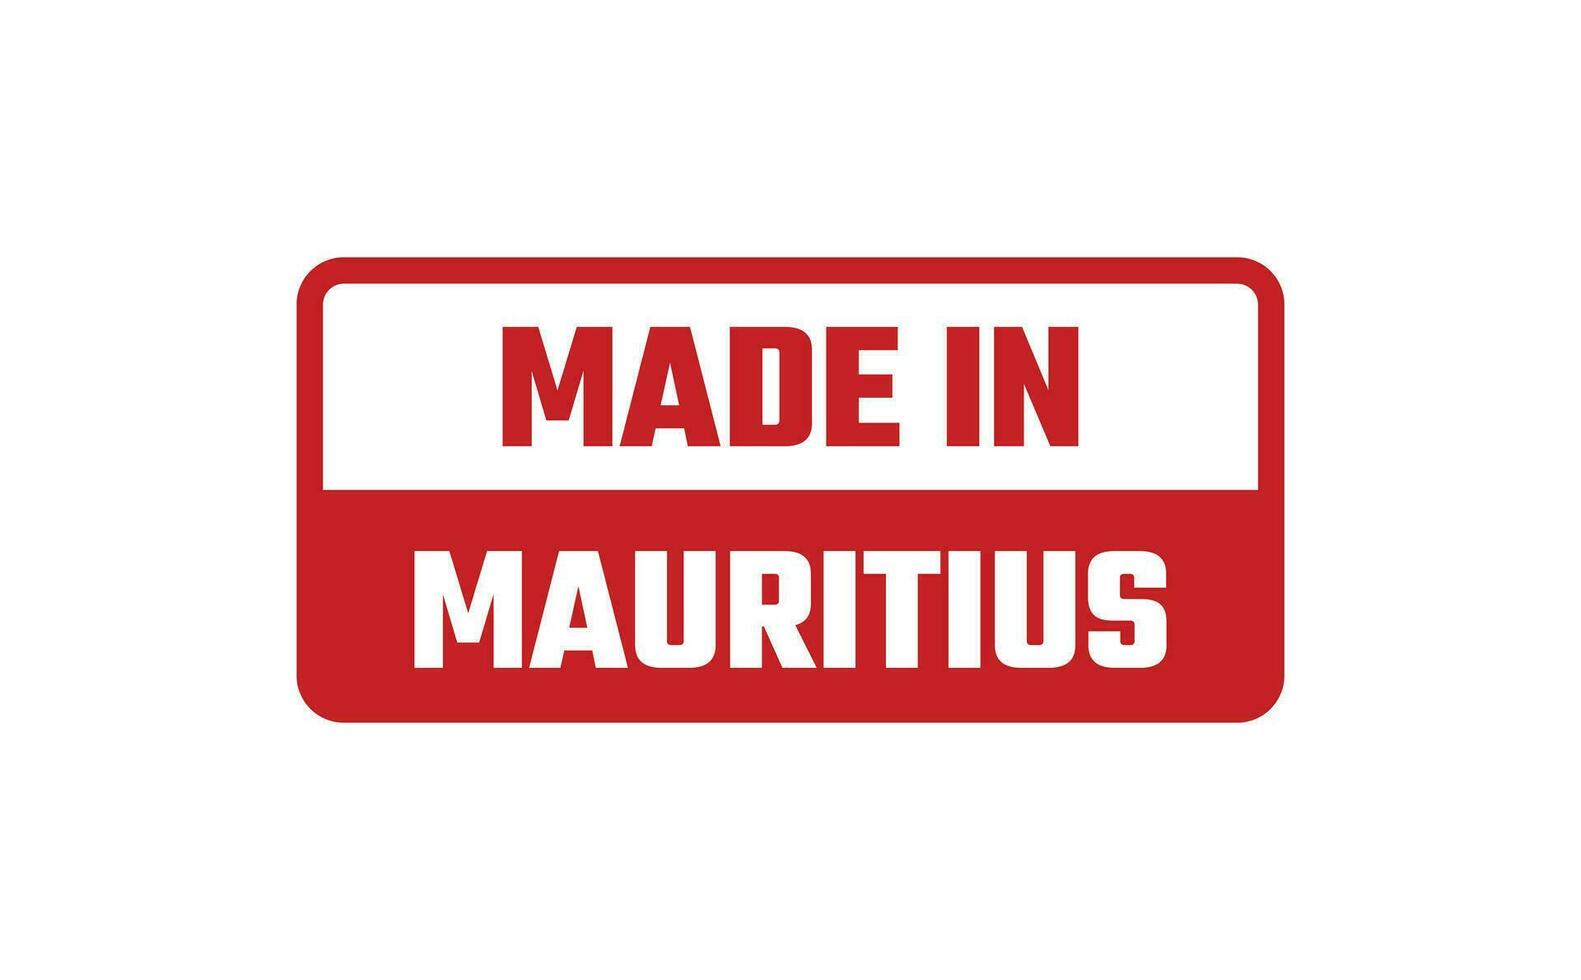 gemacht im Mauritius Gummi Briefmarke vektor